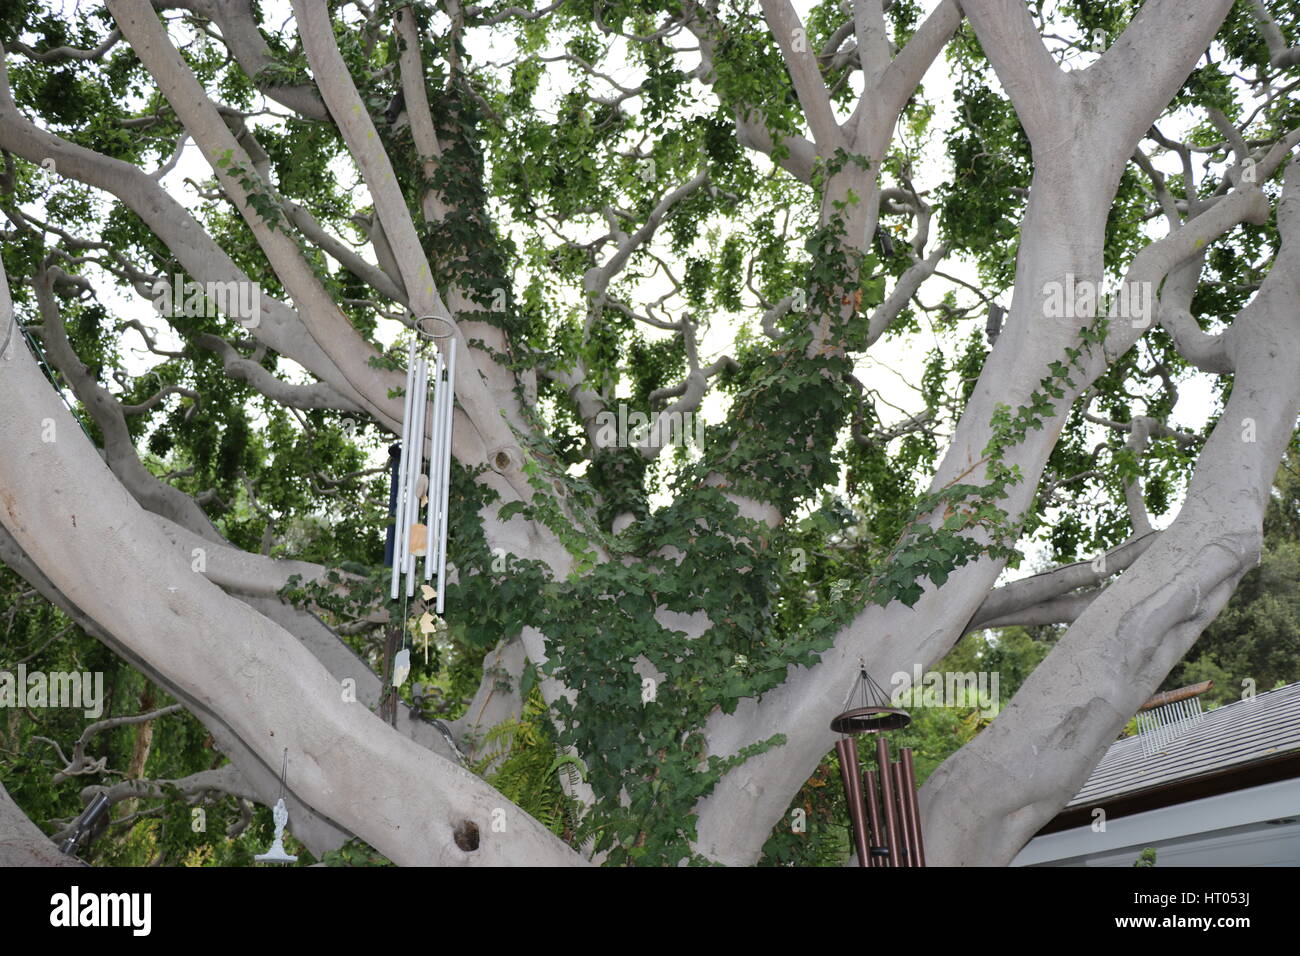 Belle image d'un arbre extravagant Banque D'Images